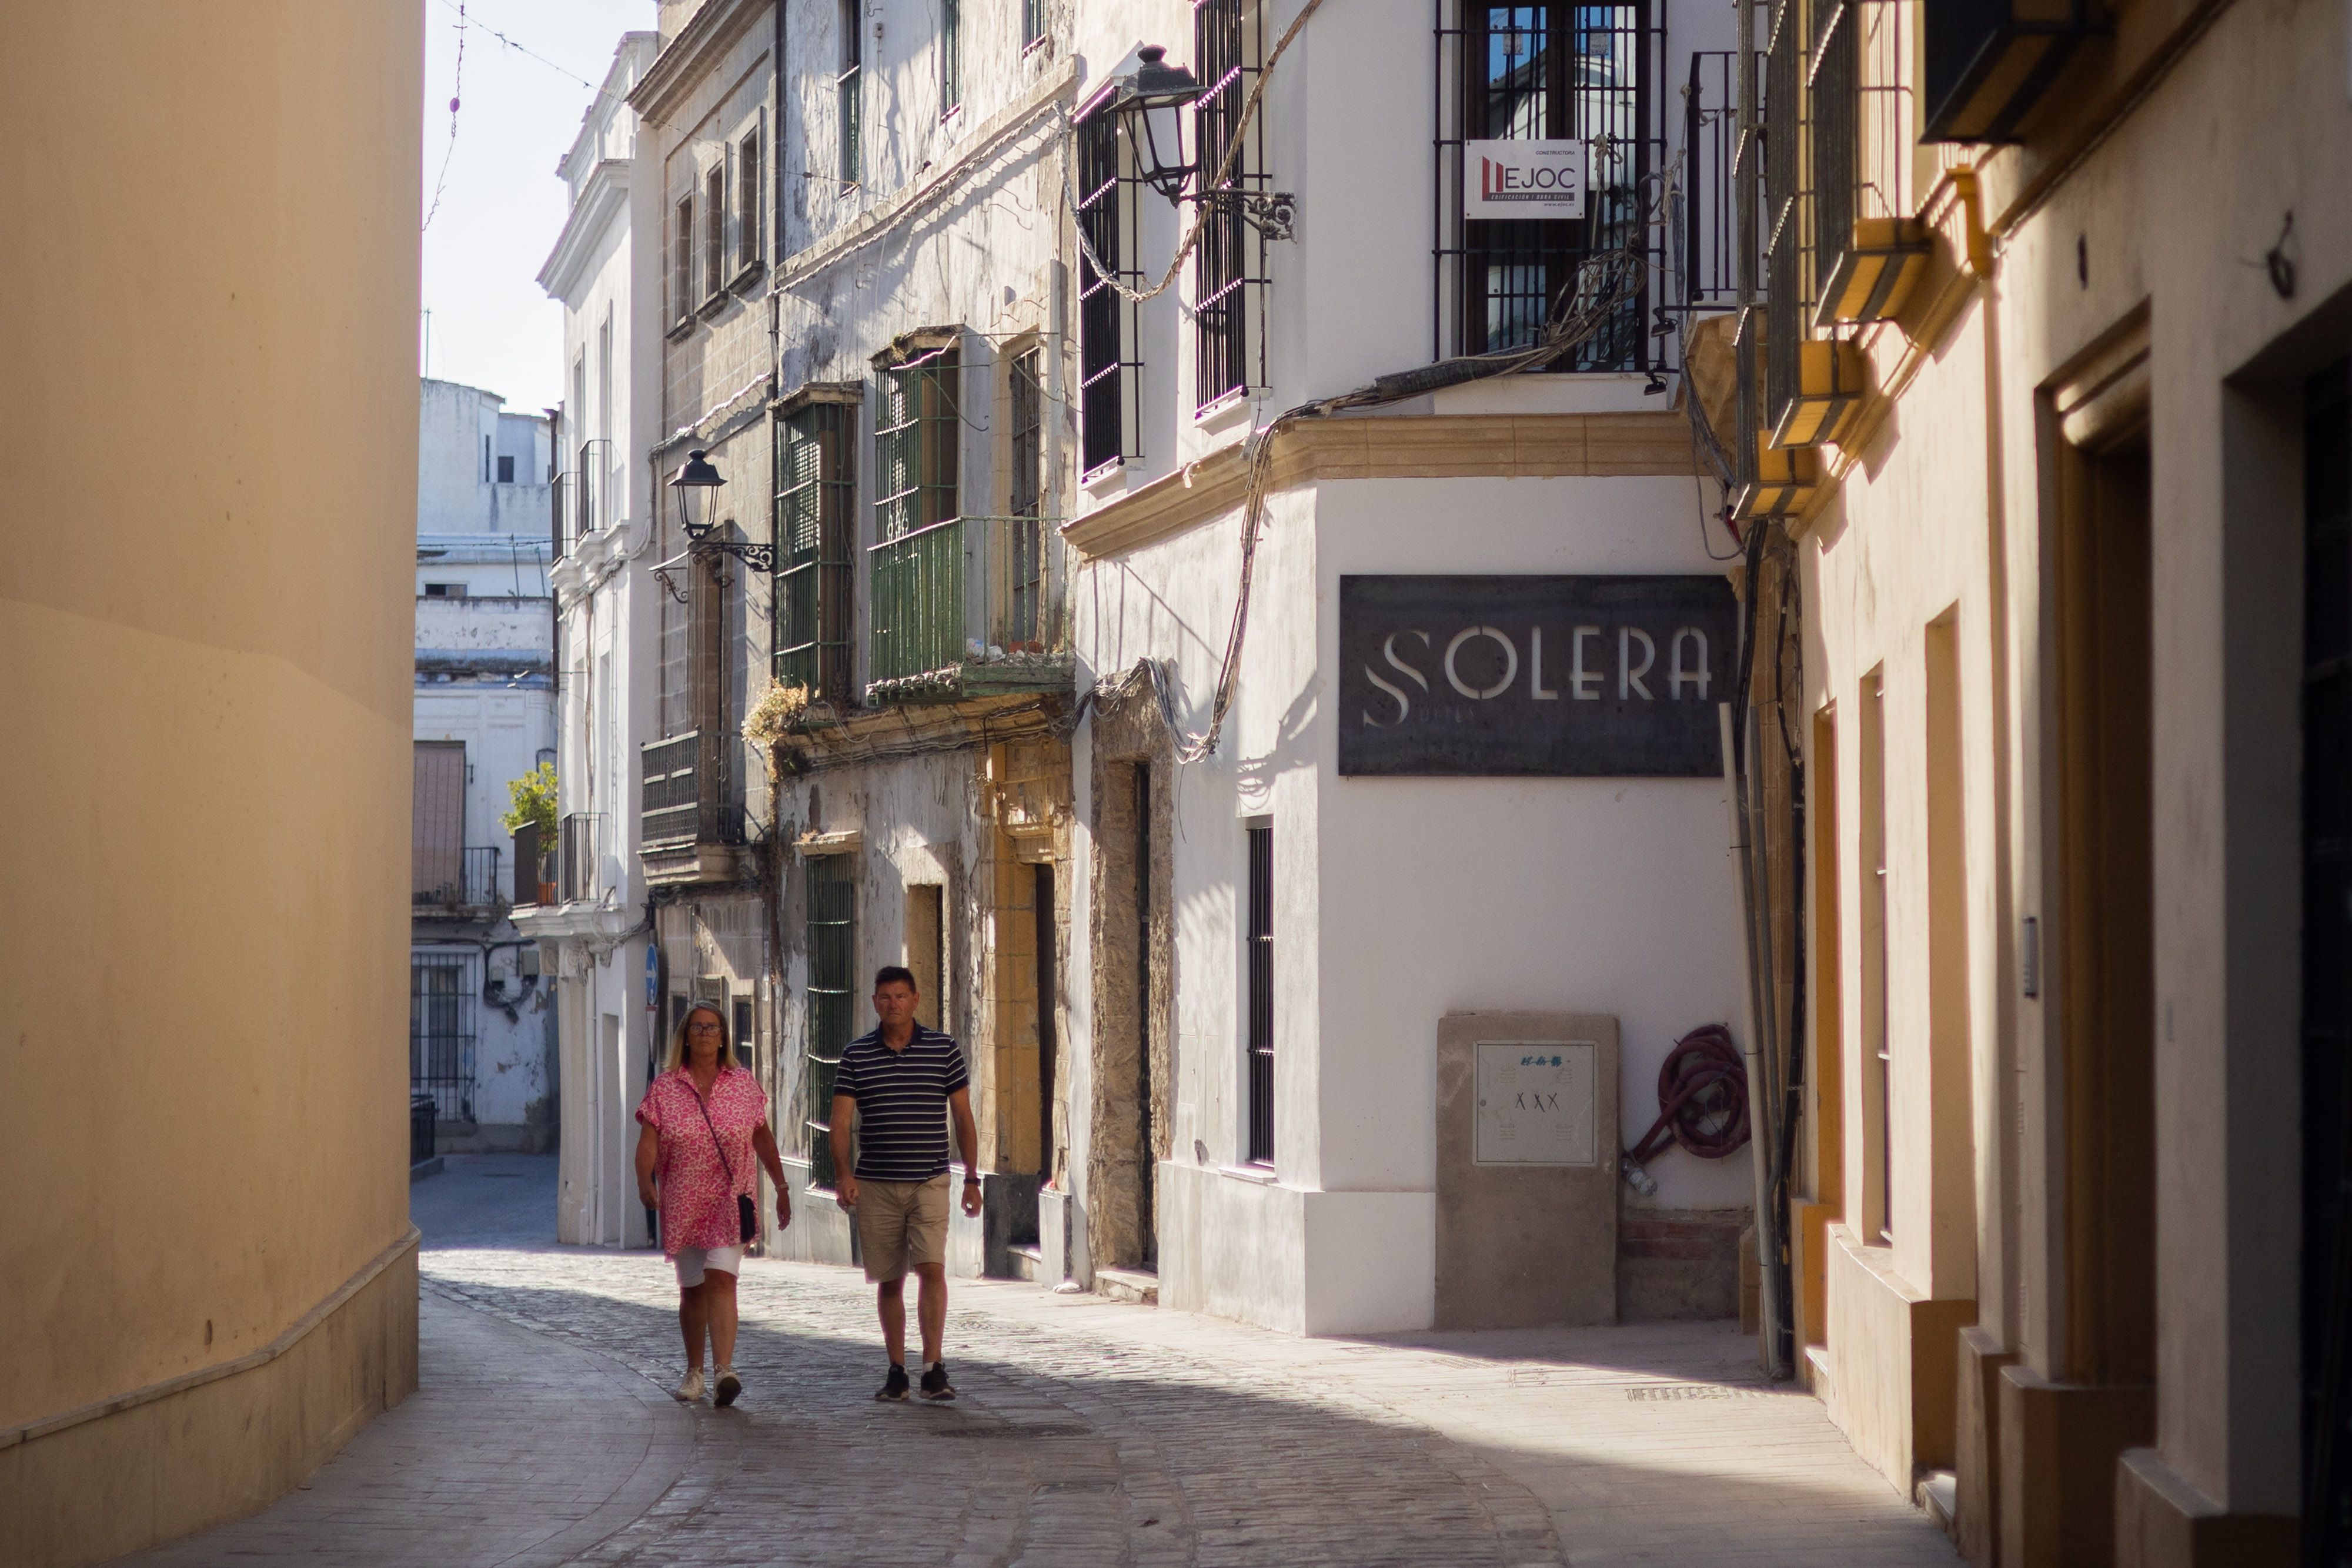 Solera Suites, en Carmen, 10, una finca histórica de intramuros en Jerez reconvertida en pisos turísticos.